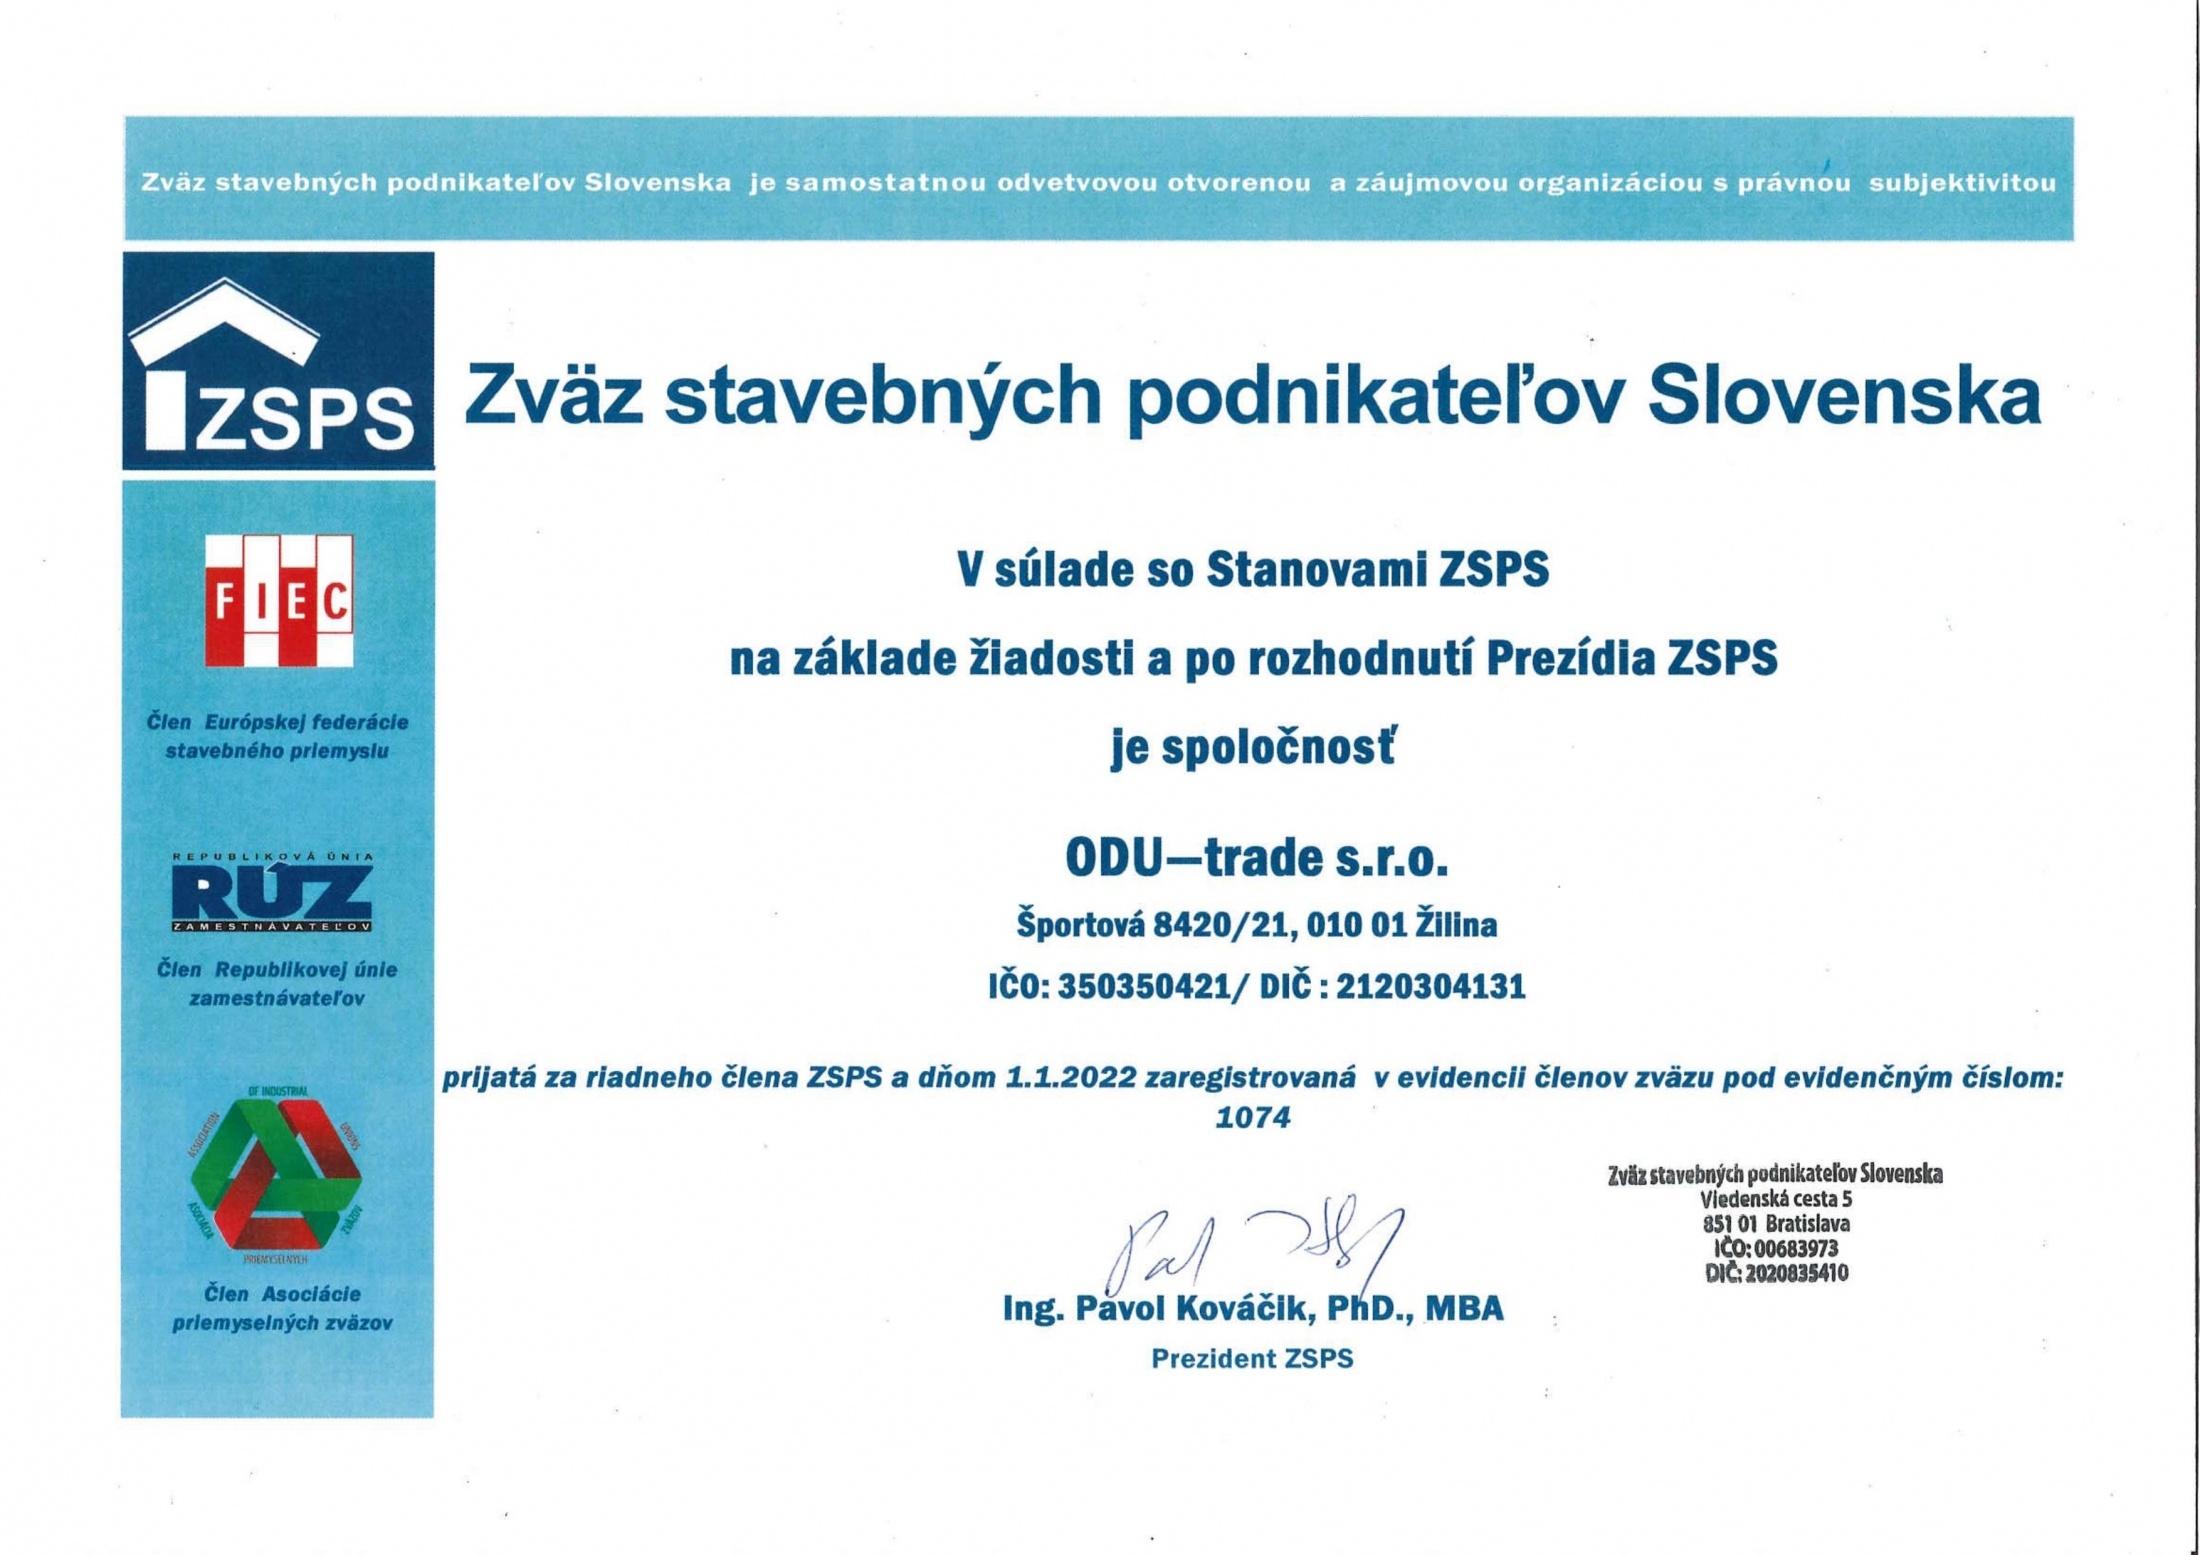 Stali sme sa členom Zväzu stavebných podnikateľov Slovenska